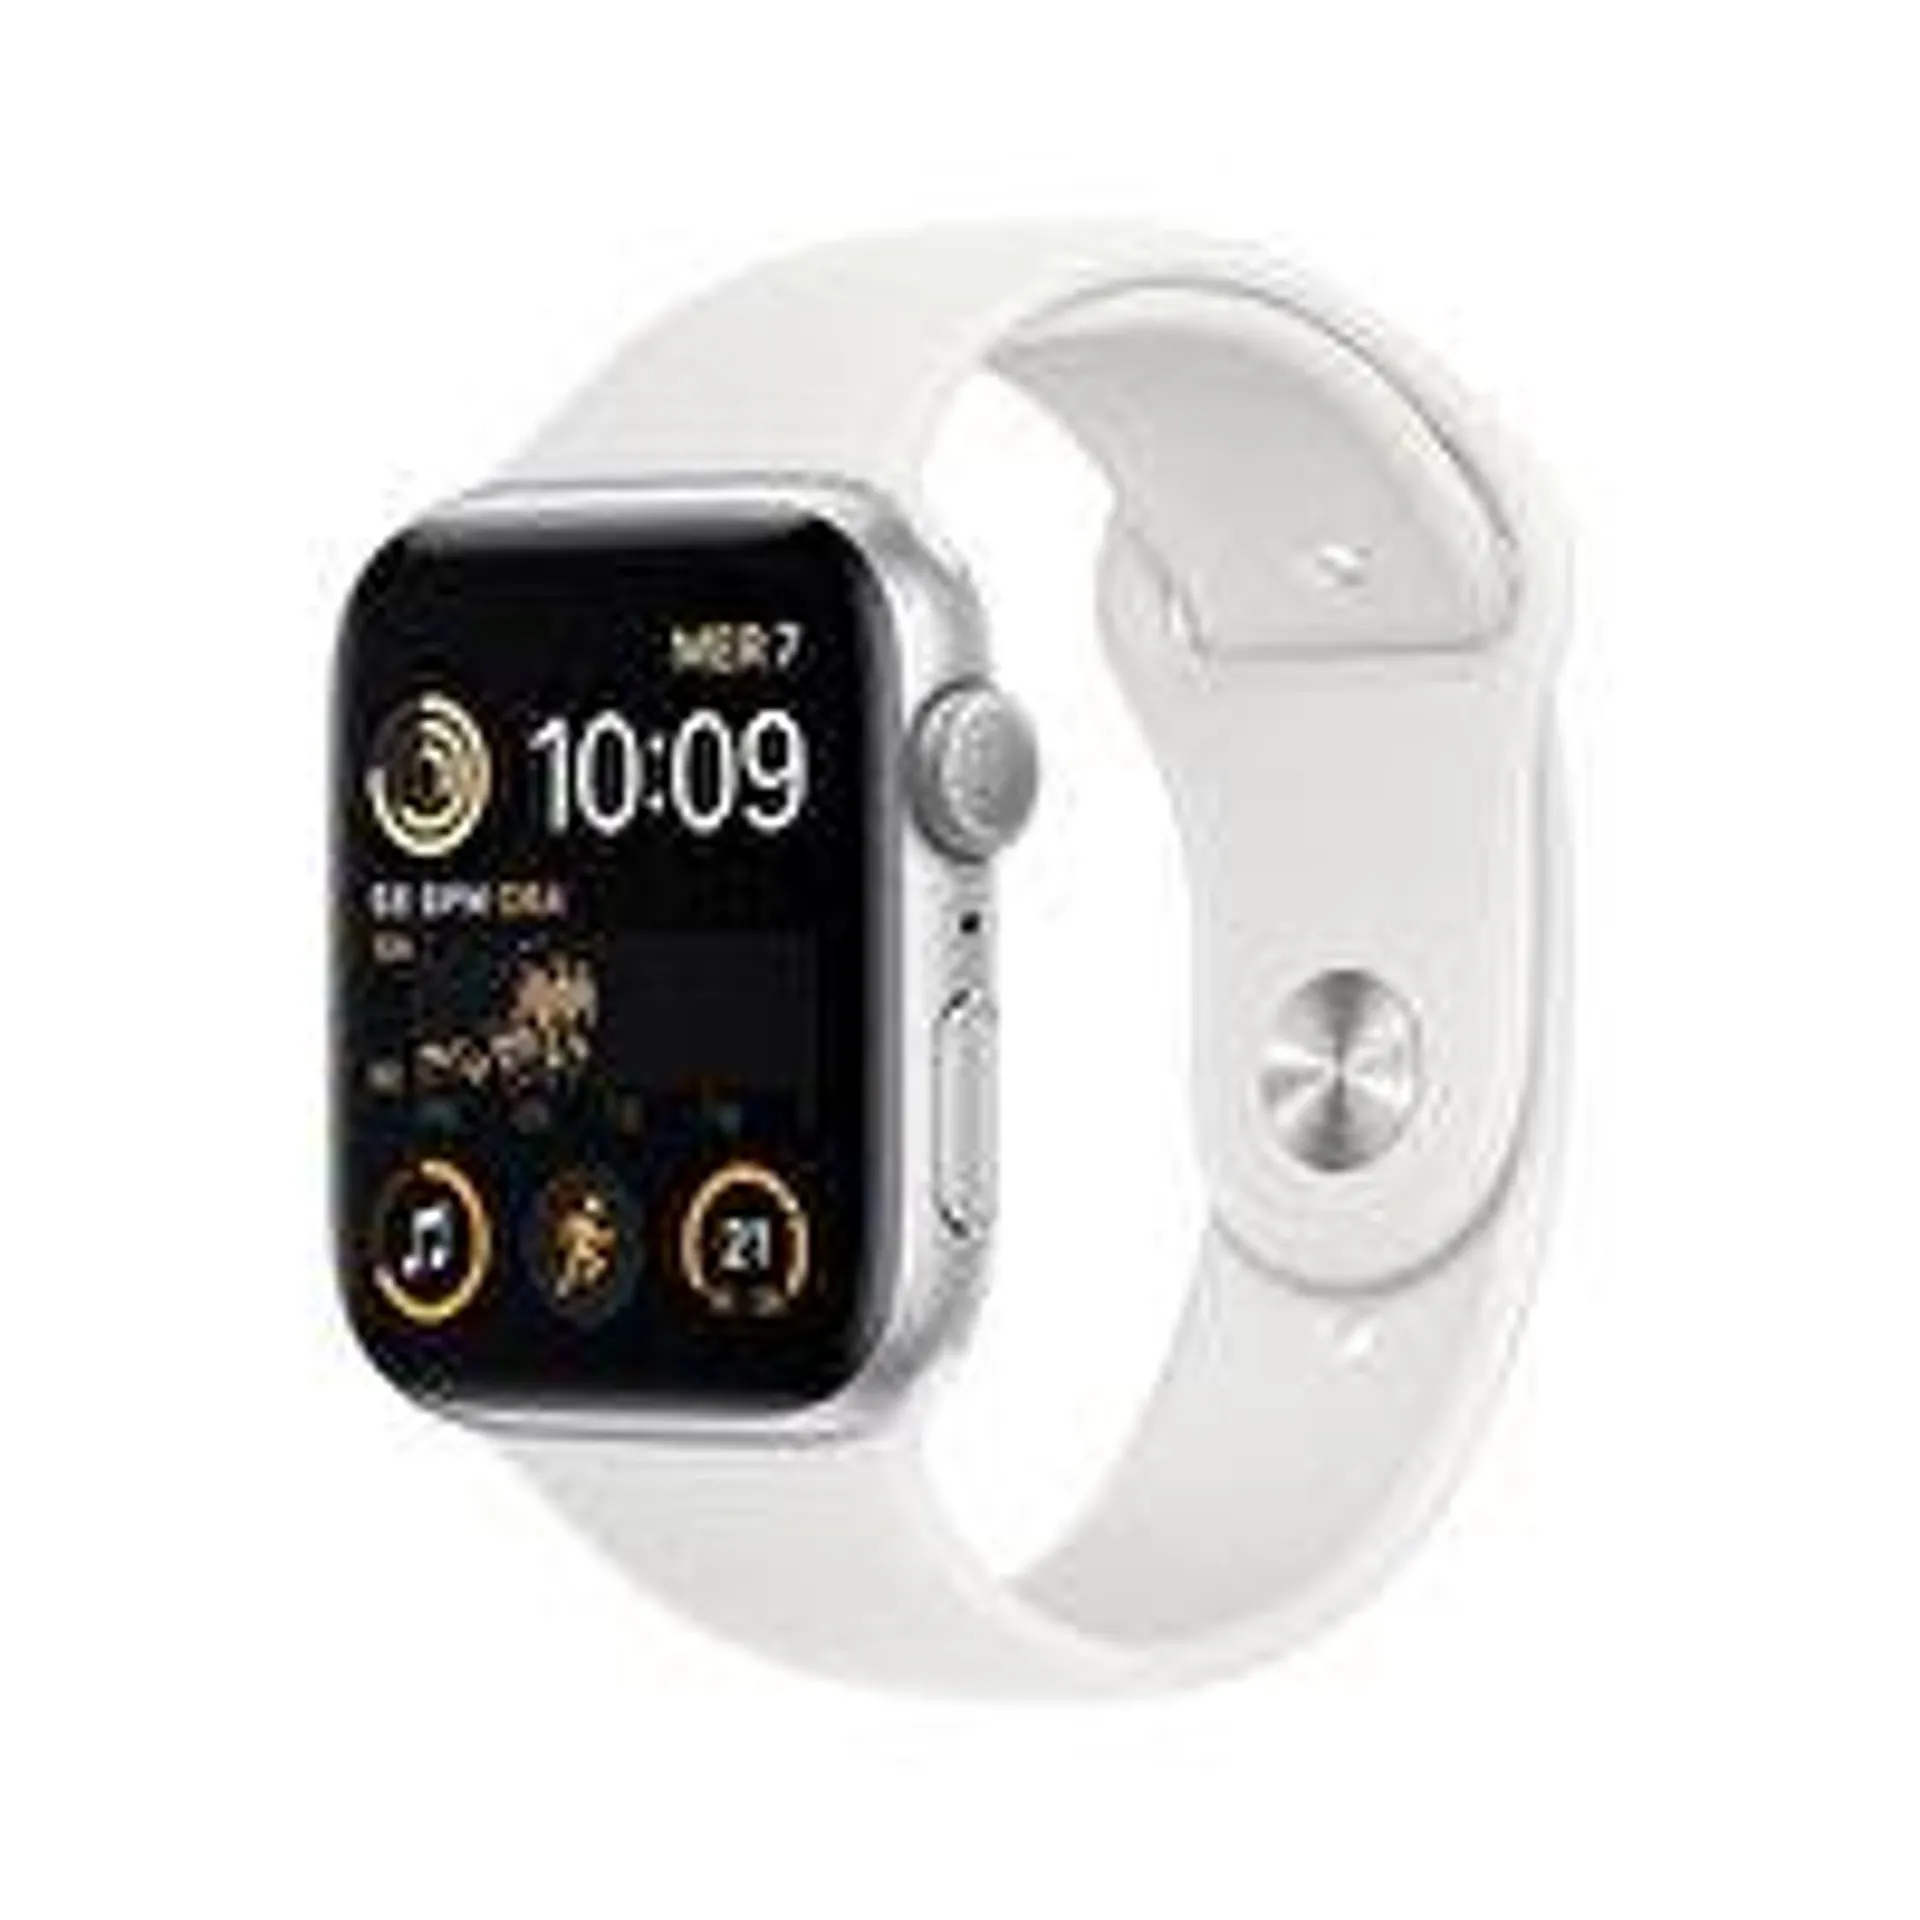 Apple Watch Fiyat ve Modelleri